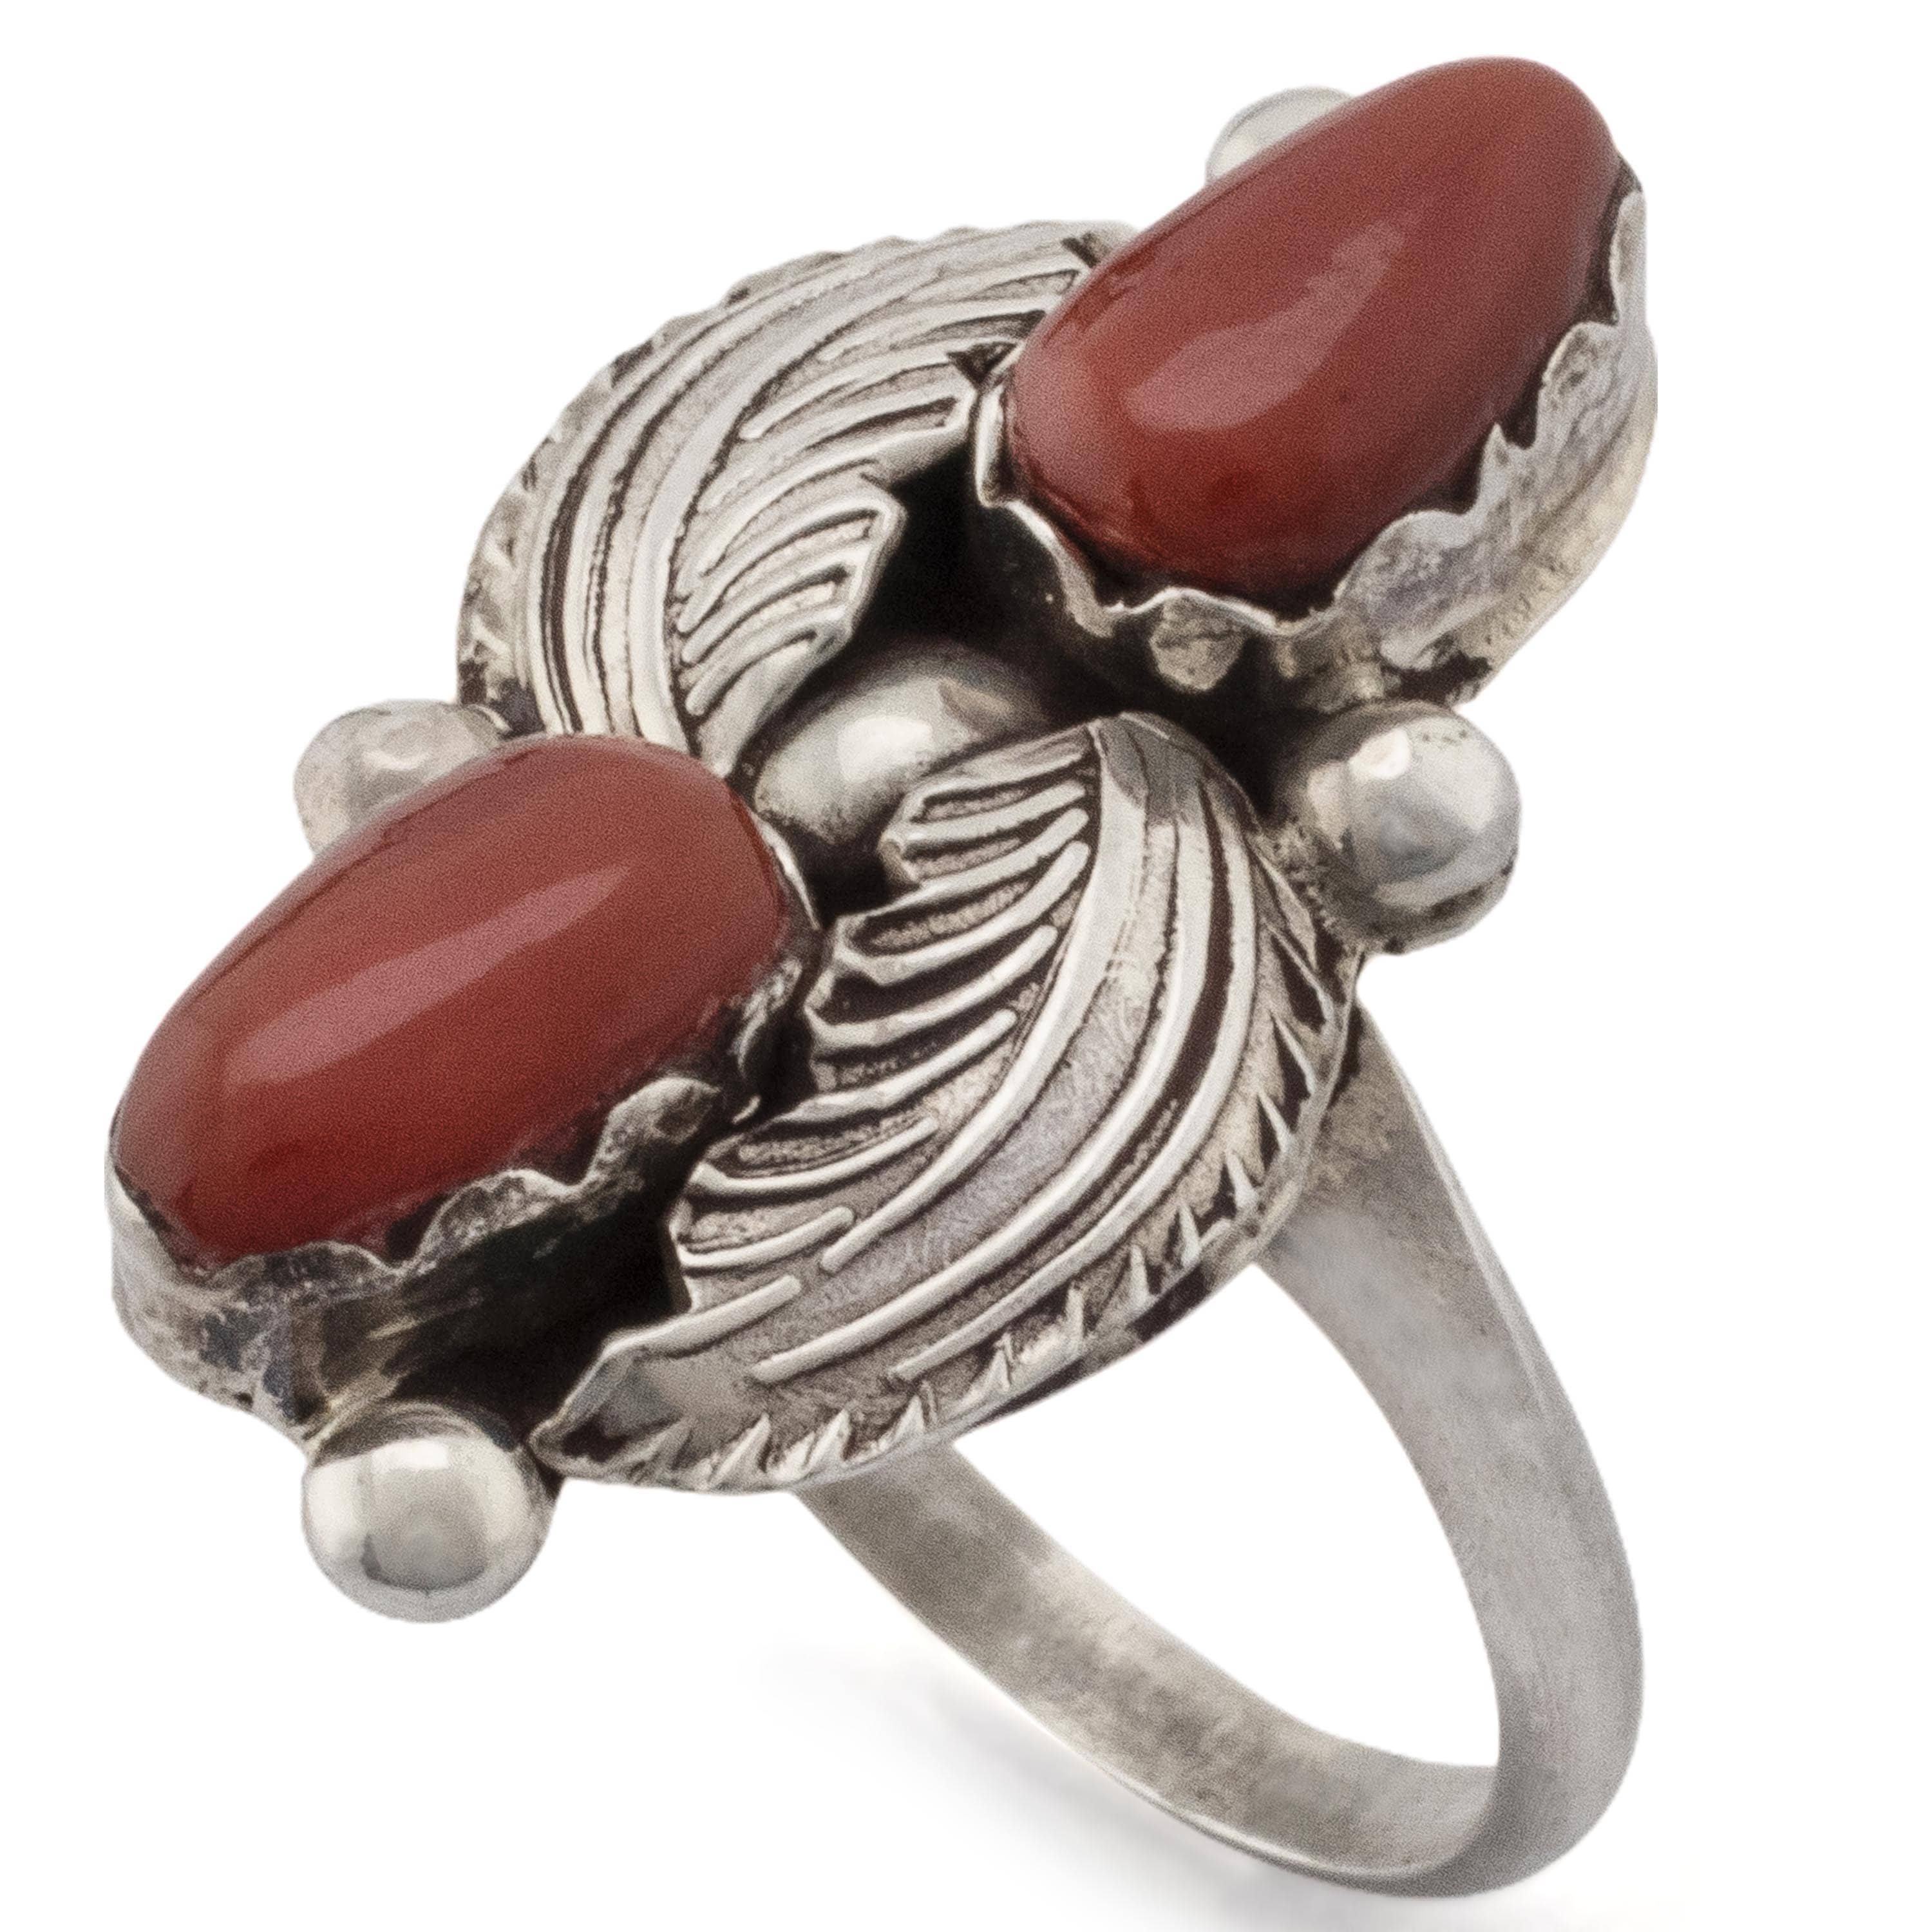 Kalifano Native American Jewelry Dan Simplicio Coral Native American Made 925 Sterling Silver Ring